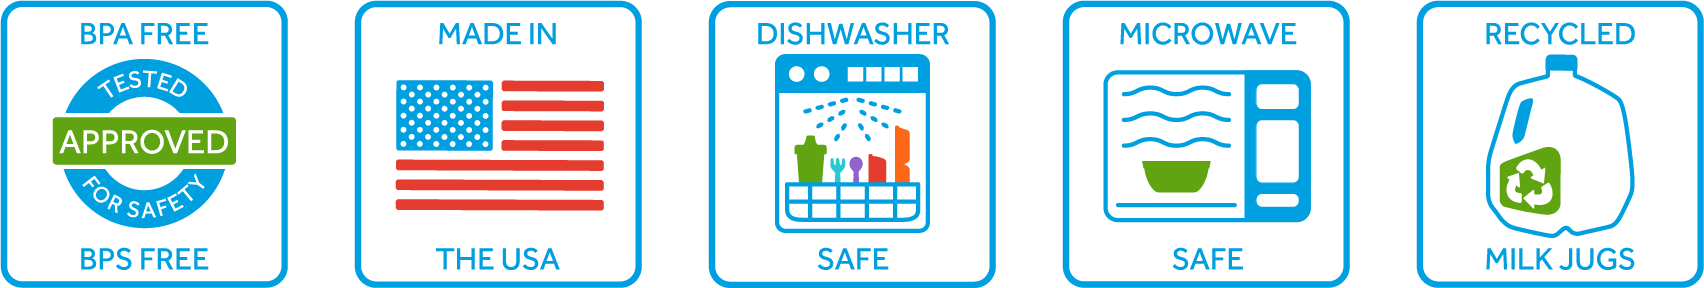 Dishes loading dishwasher